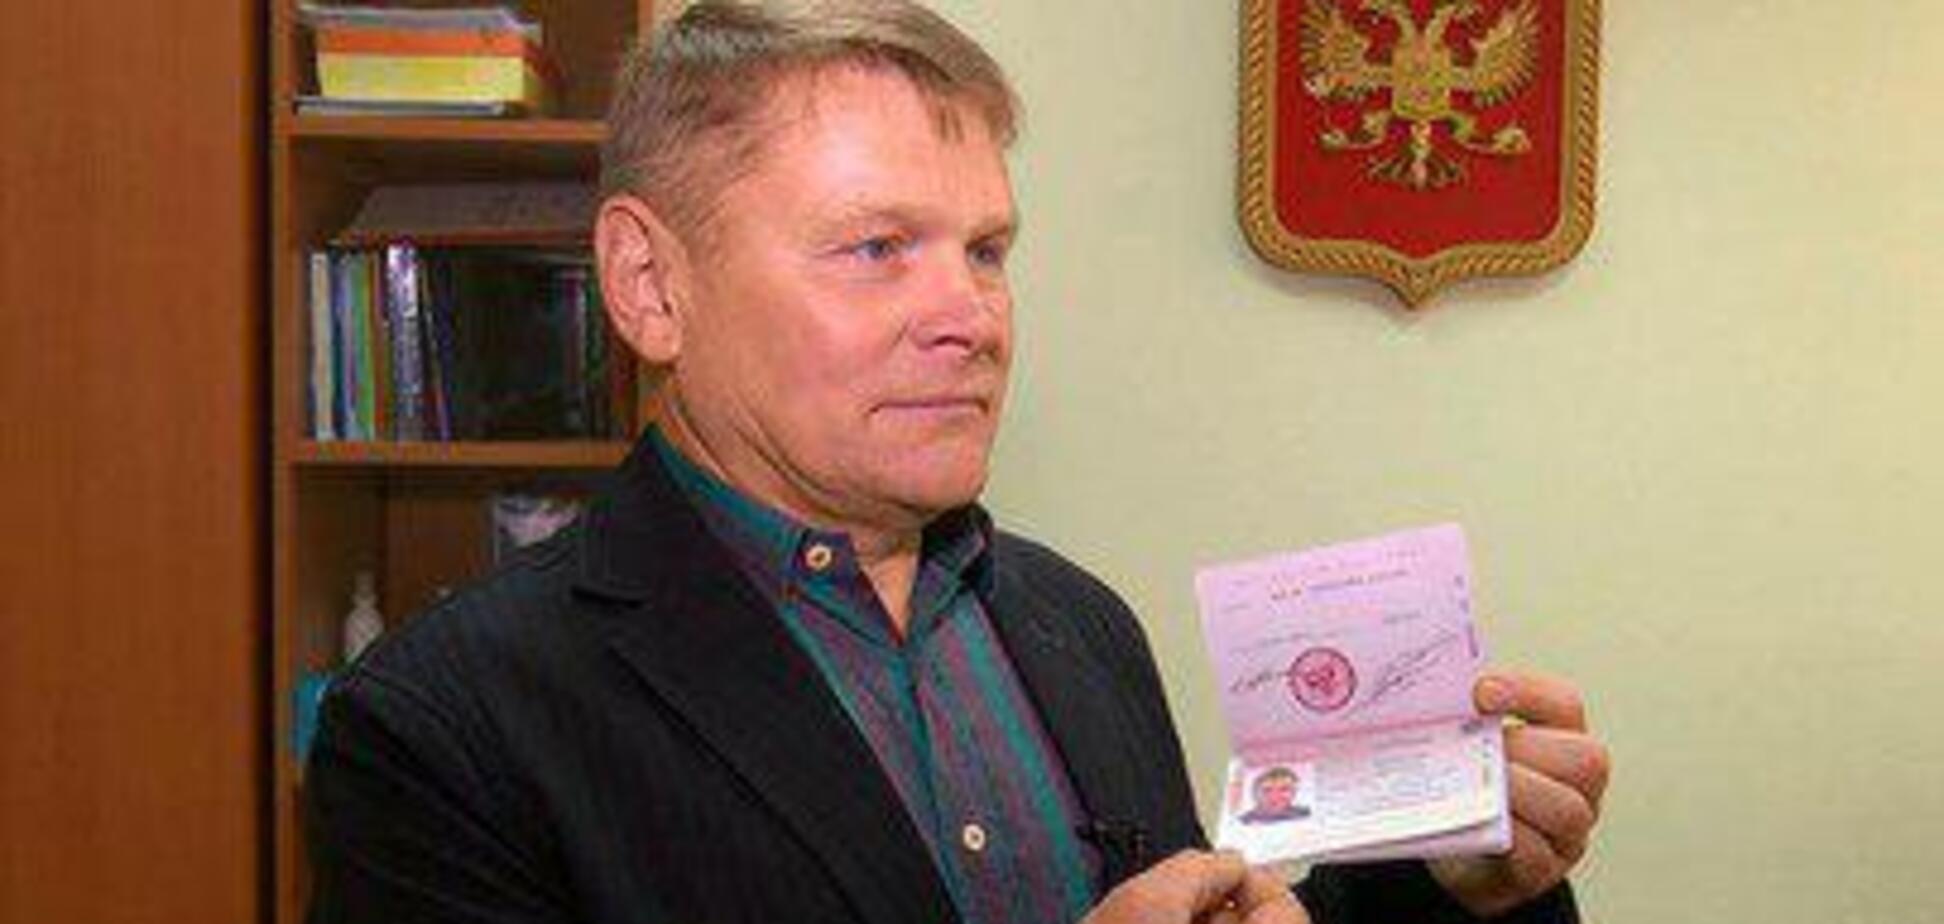 'Чувствую гордость!' Морской офицер-предатель из Одессы выпросил российский паспорт